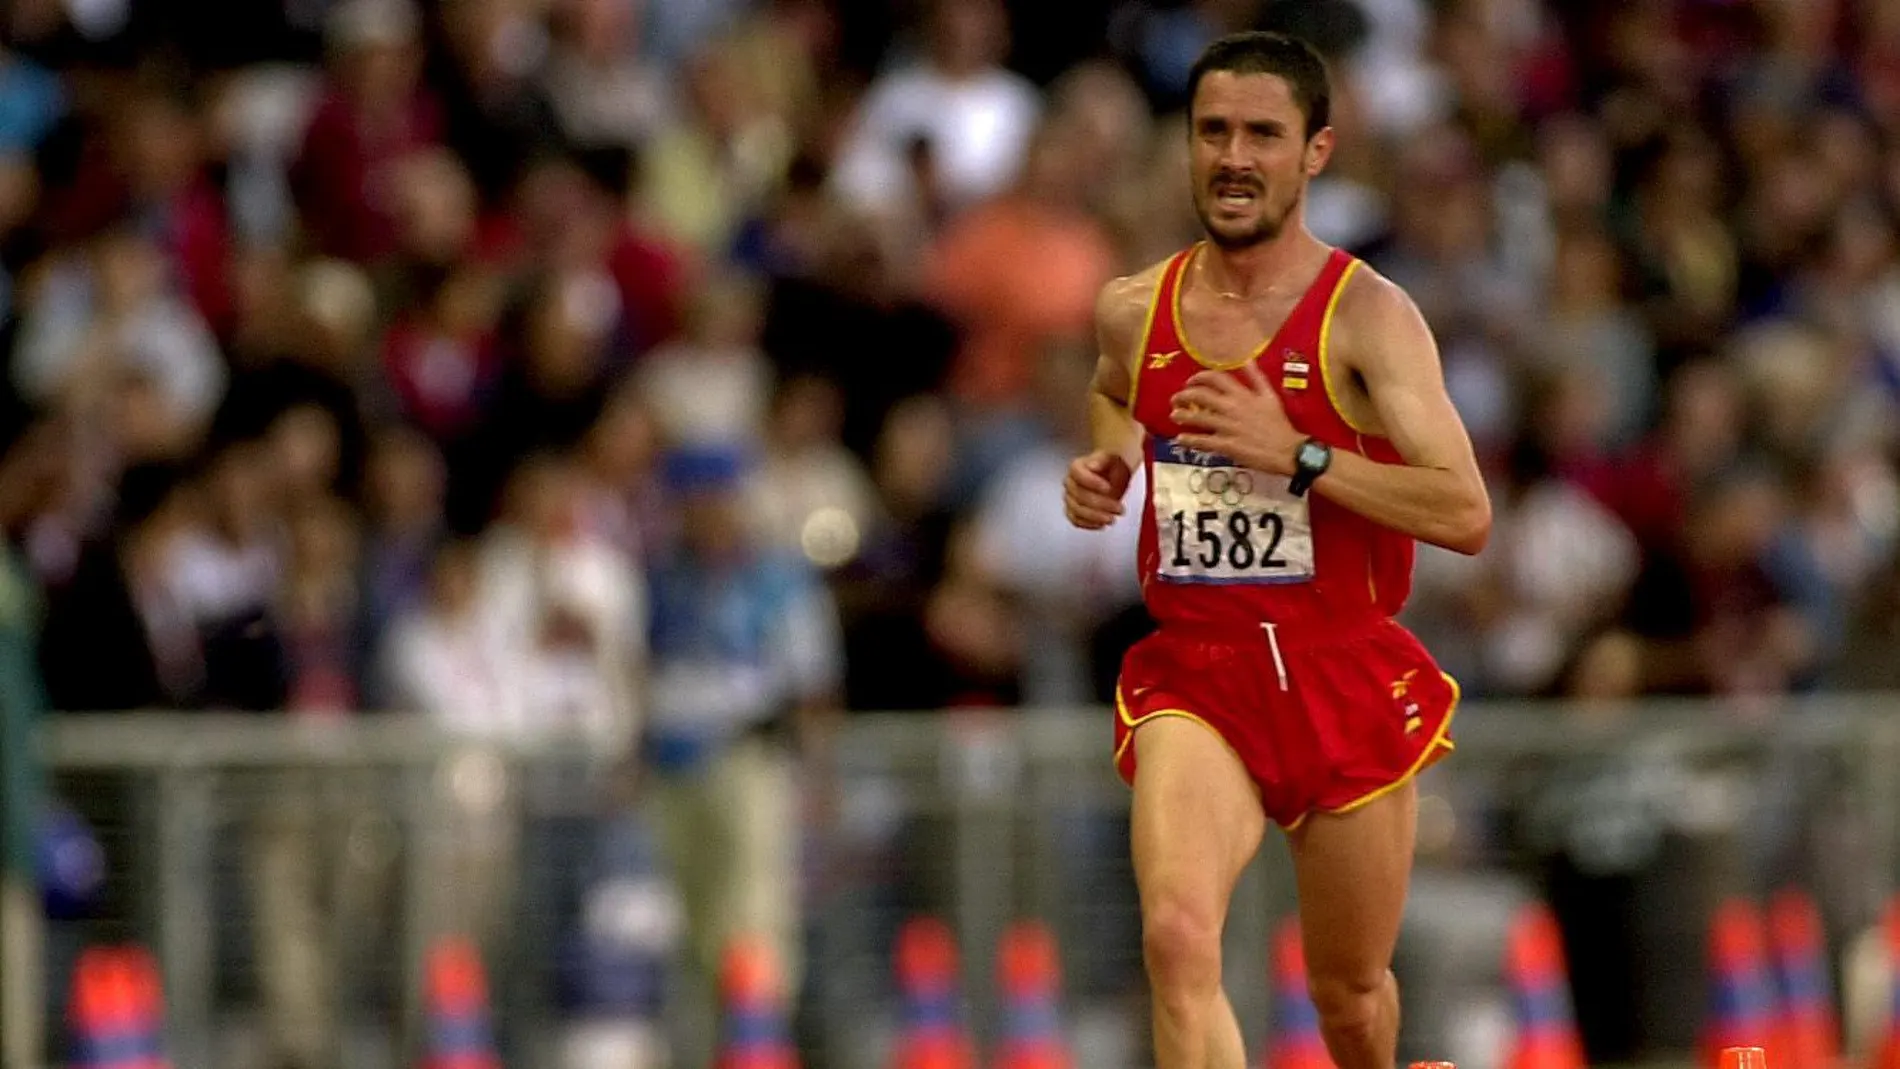 Martín Fiz, en el estadio olímpico durante el maratón de los Juegos de Sídney